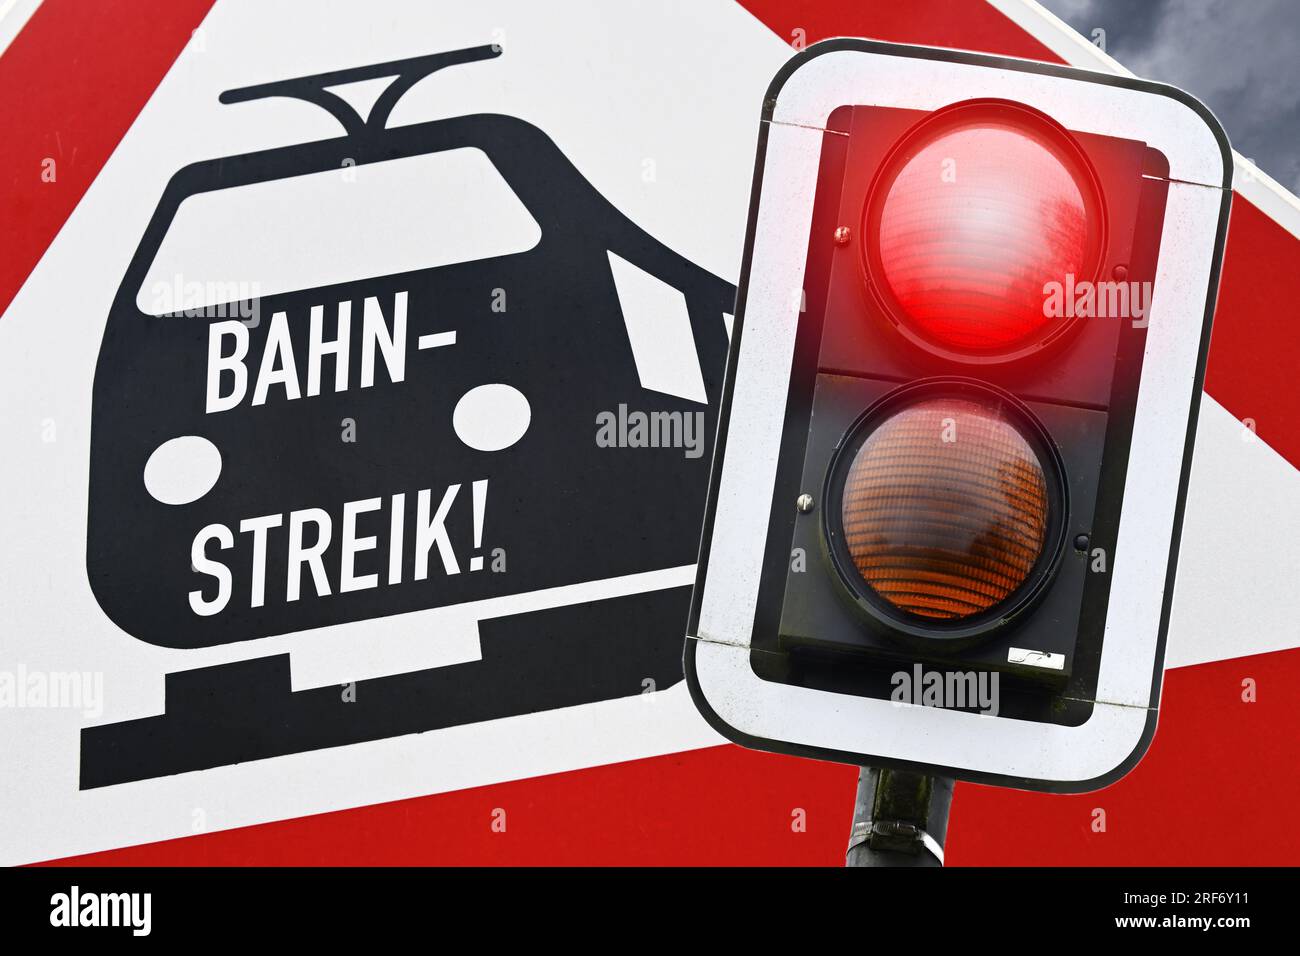 FOTOMONTAGE, Bahnschild mit Aufschrift Bahnstreik und rotes Haltesignal Foto Stock